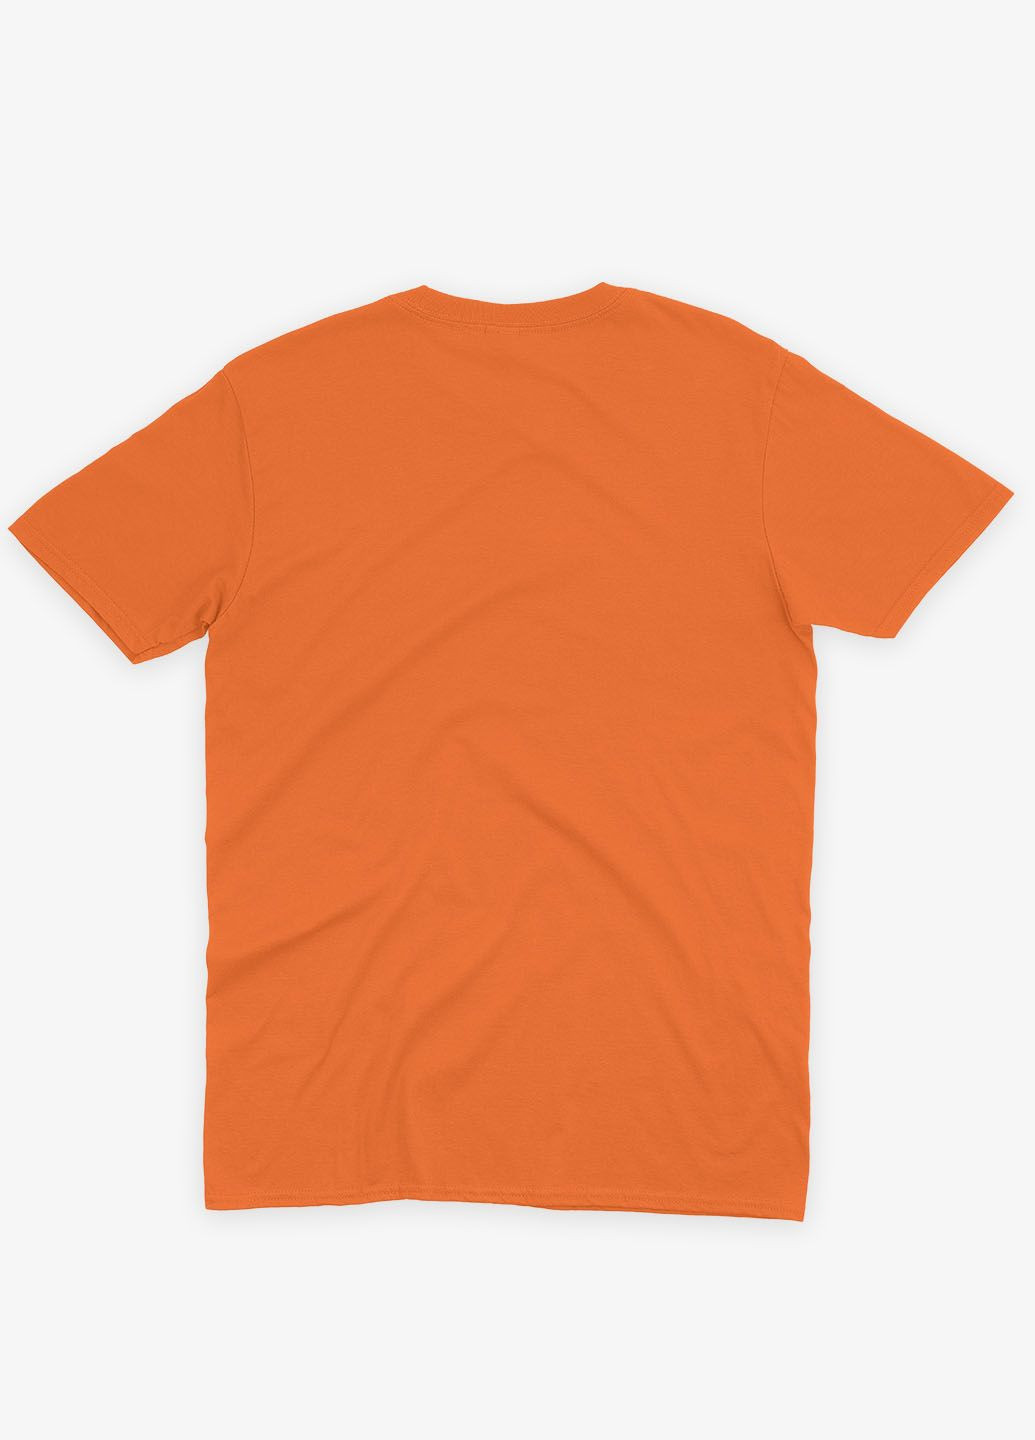 Оранжевая демисезонная футболка для девочки с принтом супергероя - человек-паук (ts001-1-ora-006-014-074-g) Modno